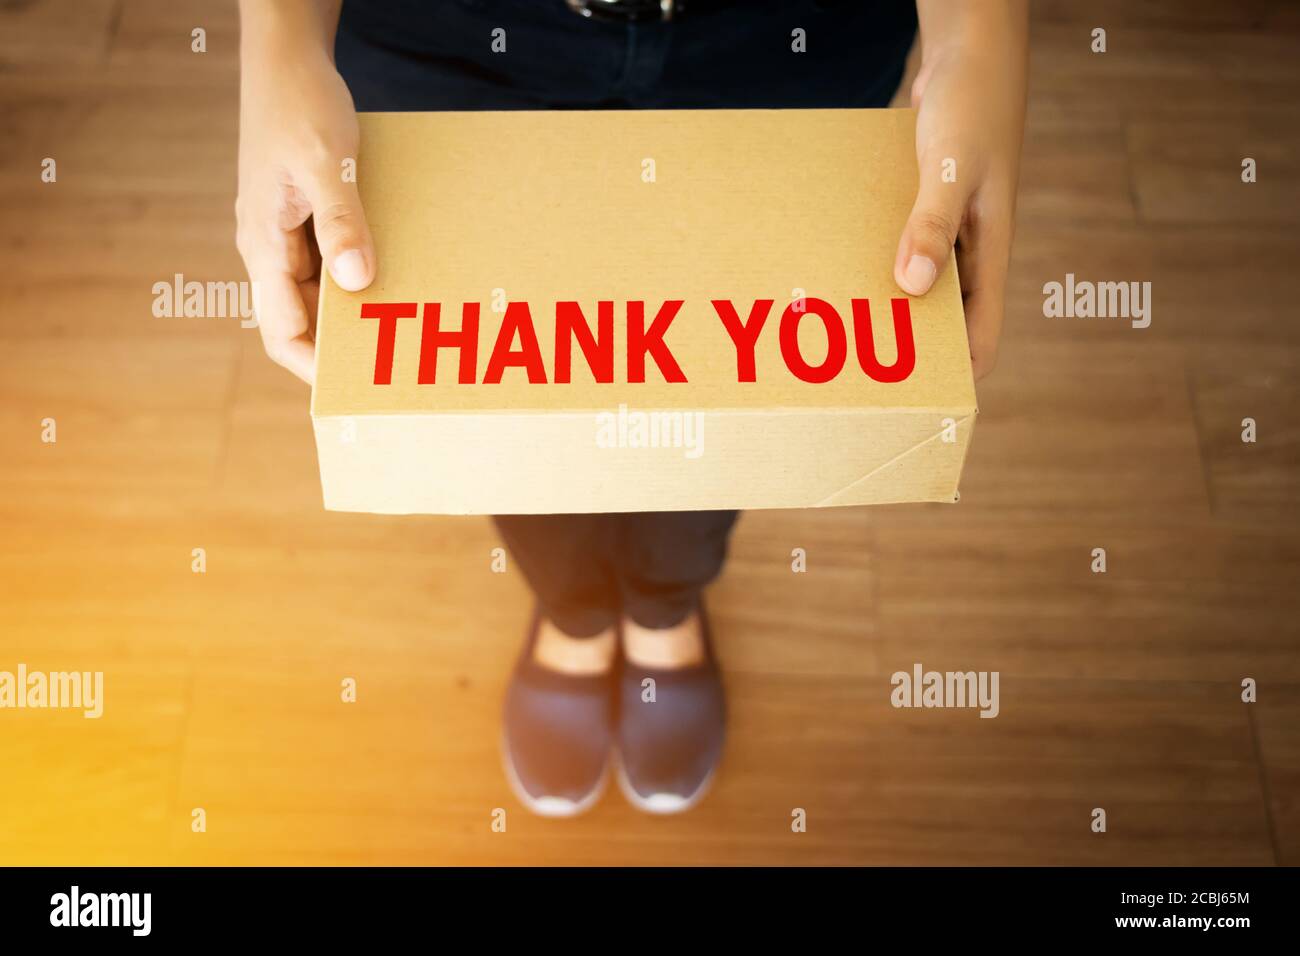 Mensaje de agradecimiento para el cliente que compra con su concepto de tienda: Mensaje de agradecimiento palabra sobre entrega simple caja marrón en la mano de un mensajero amable Foto de stock